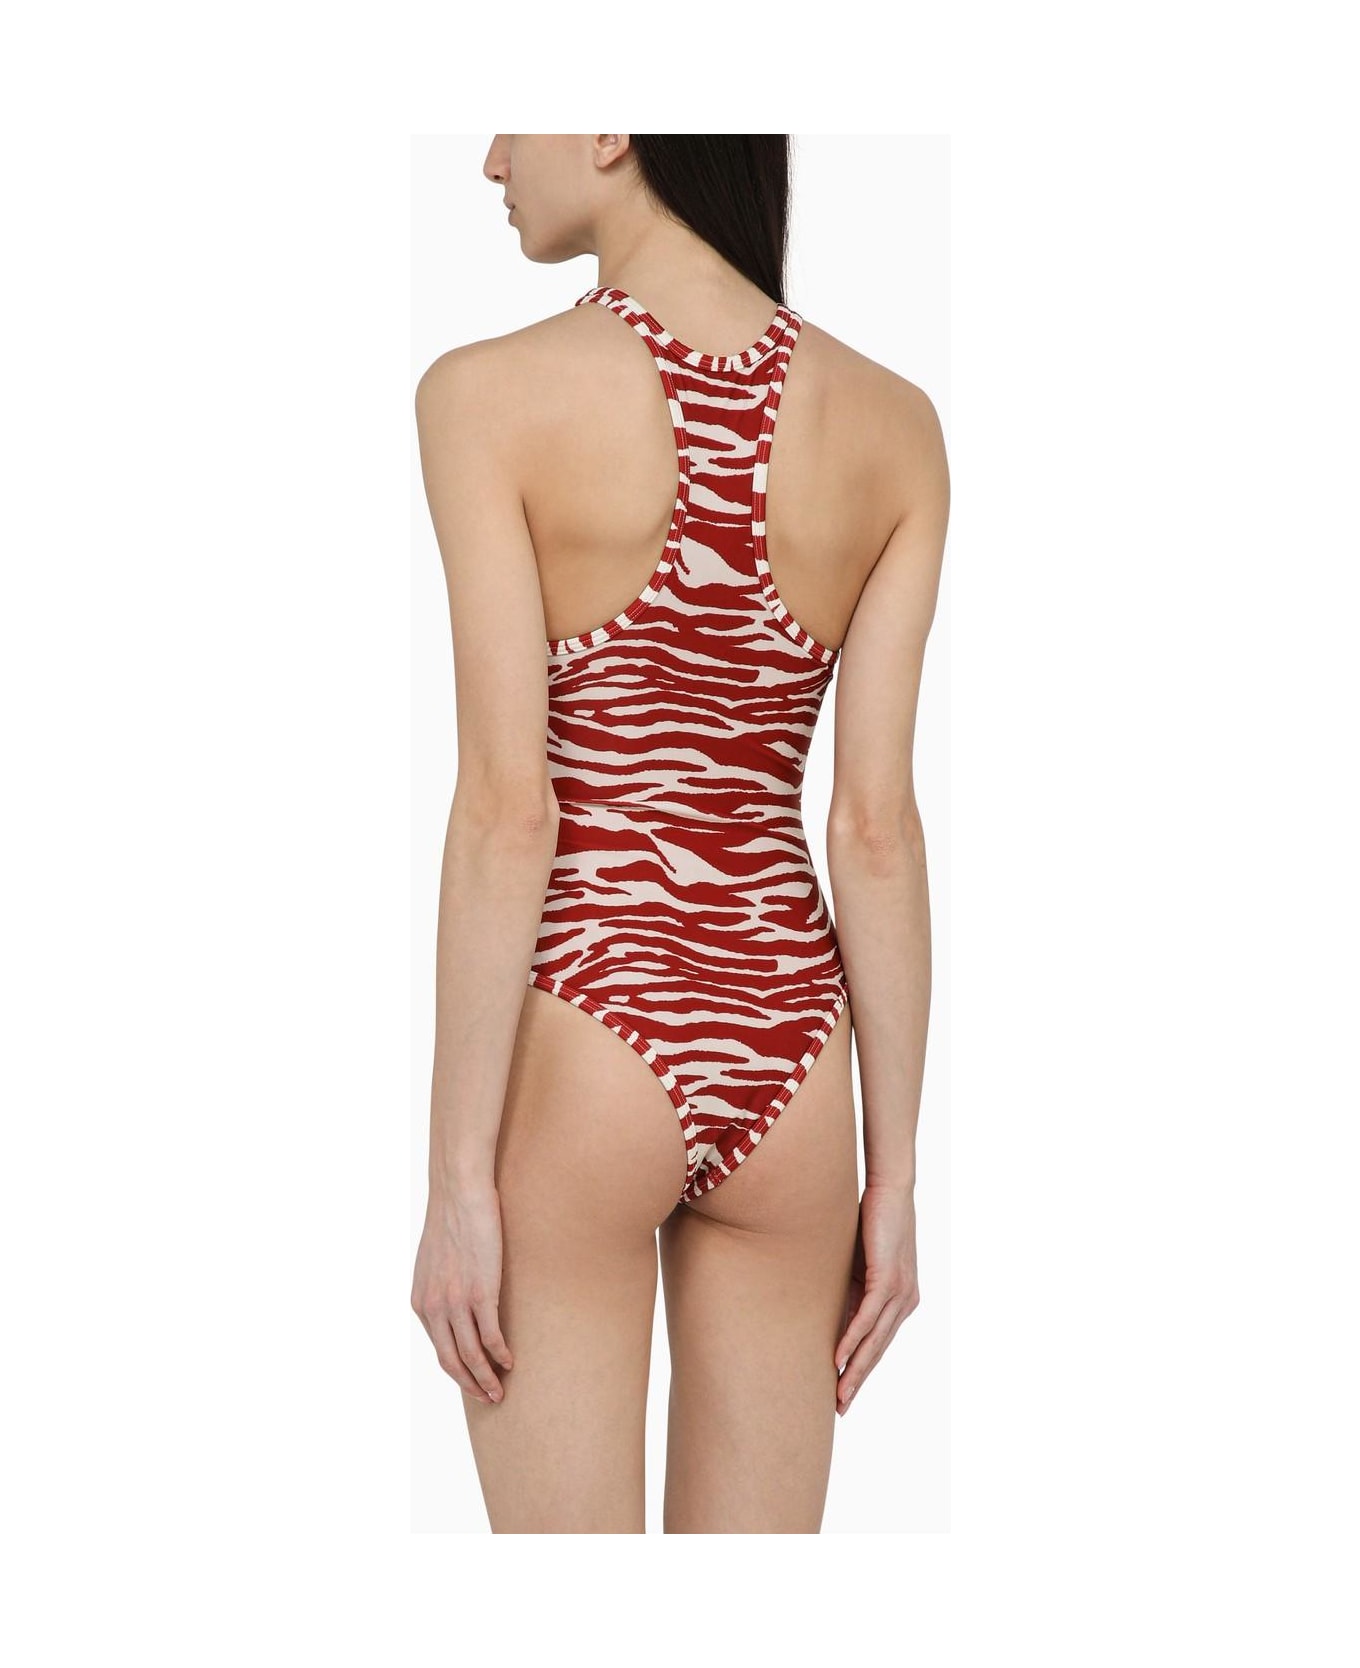 The Attico Zebra Print White\/red One-piece Swimming Costume - Red